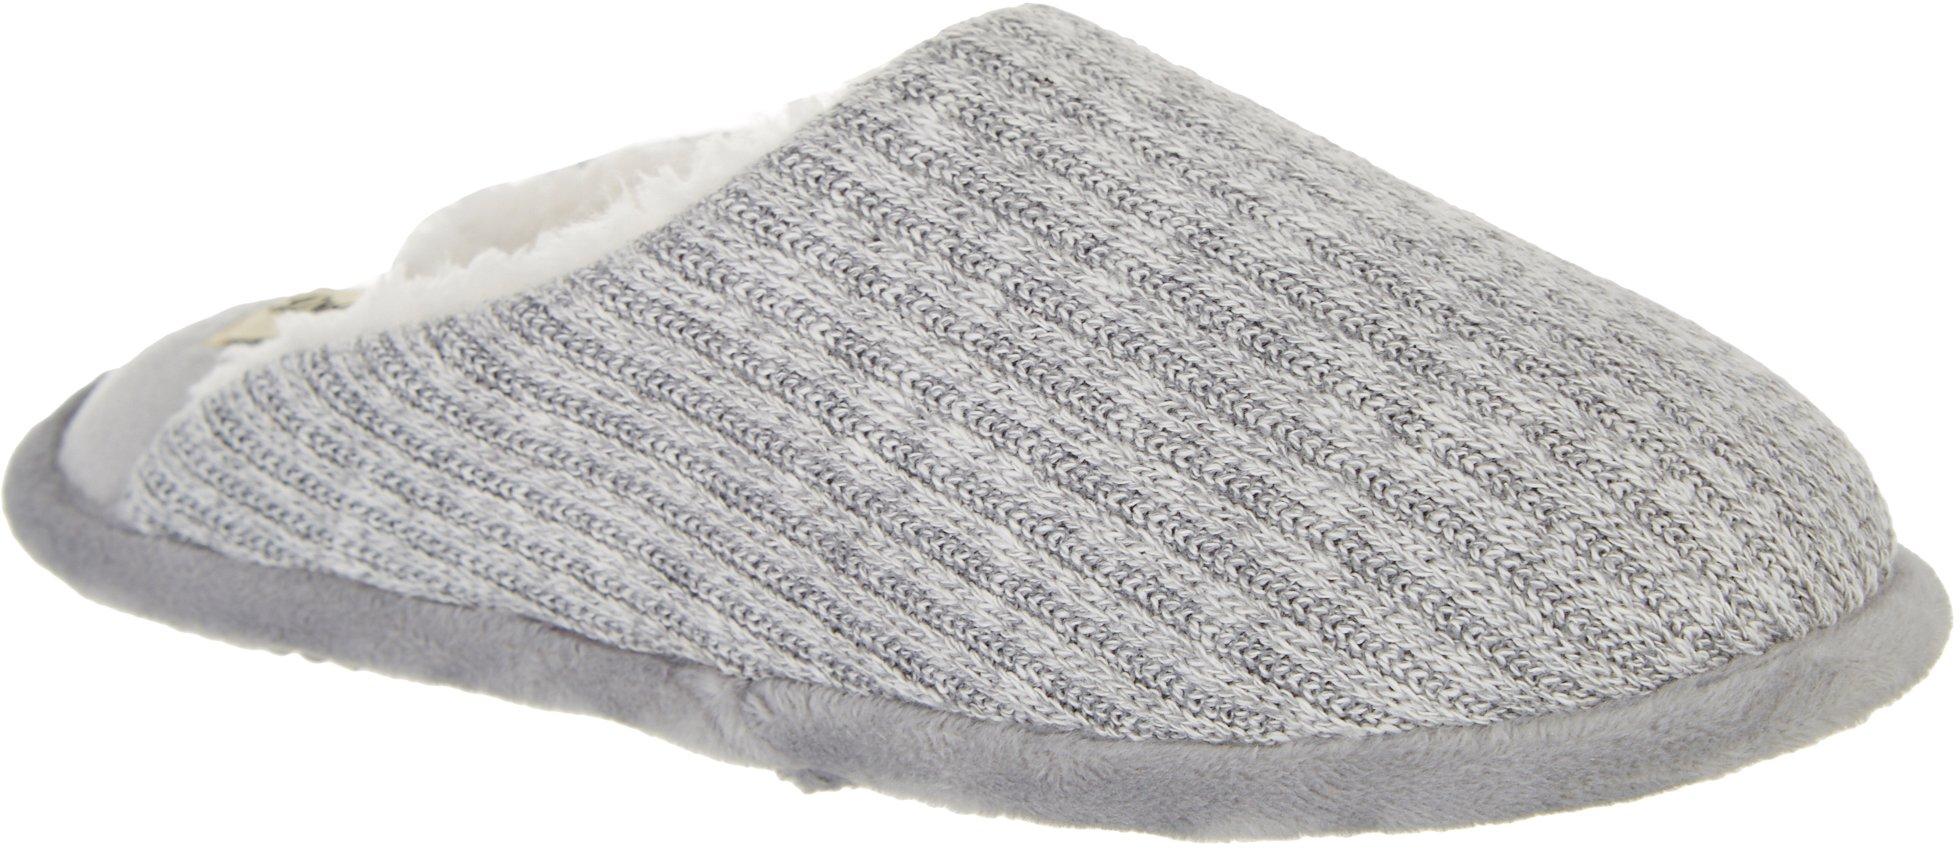 bealls dearfoam slippers